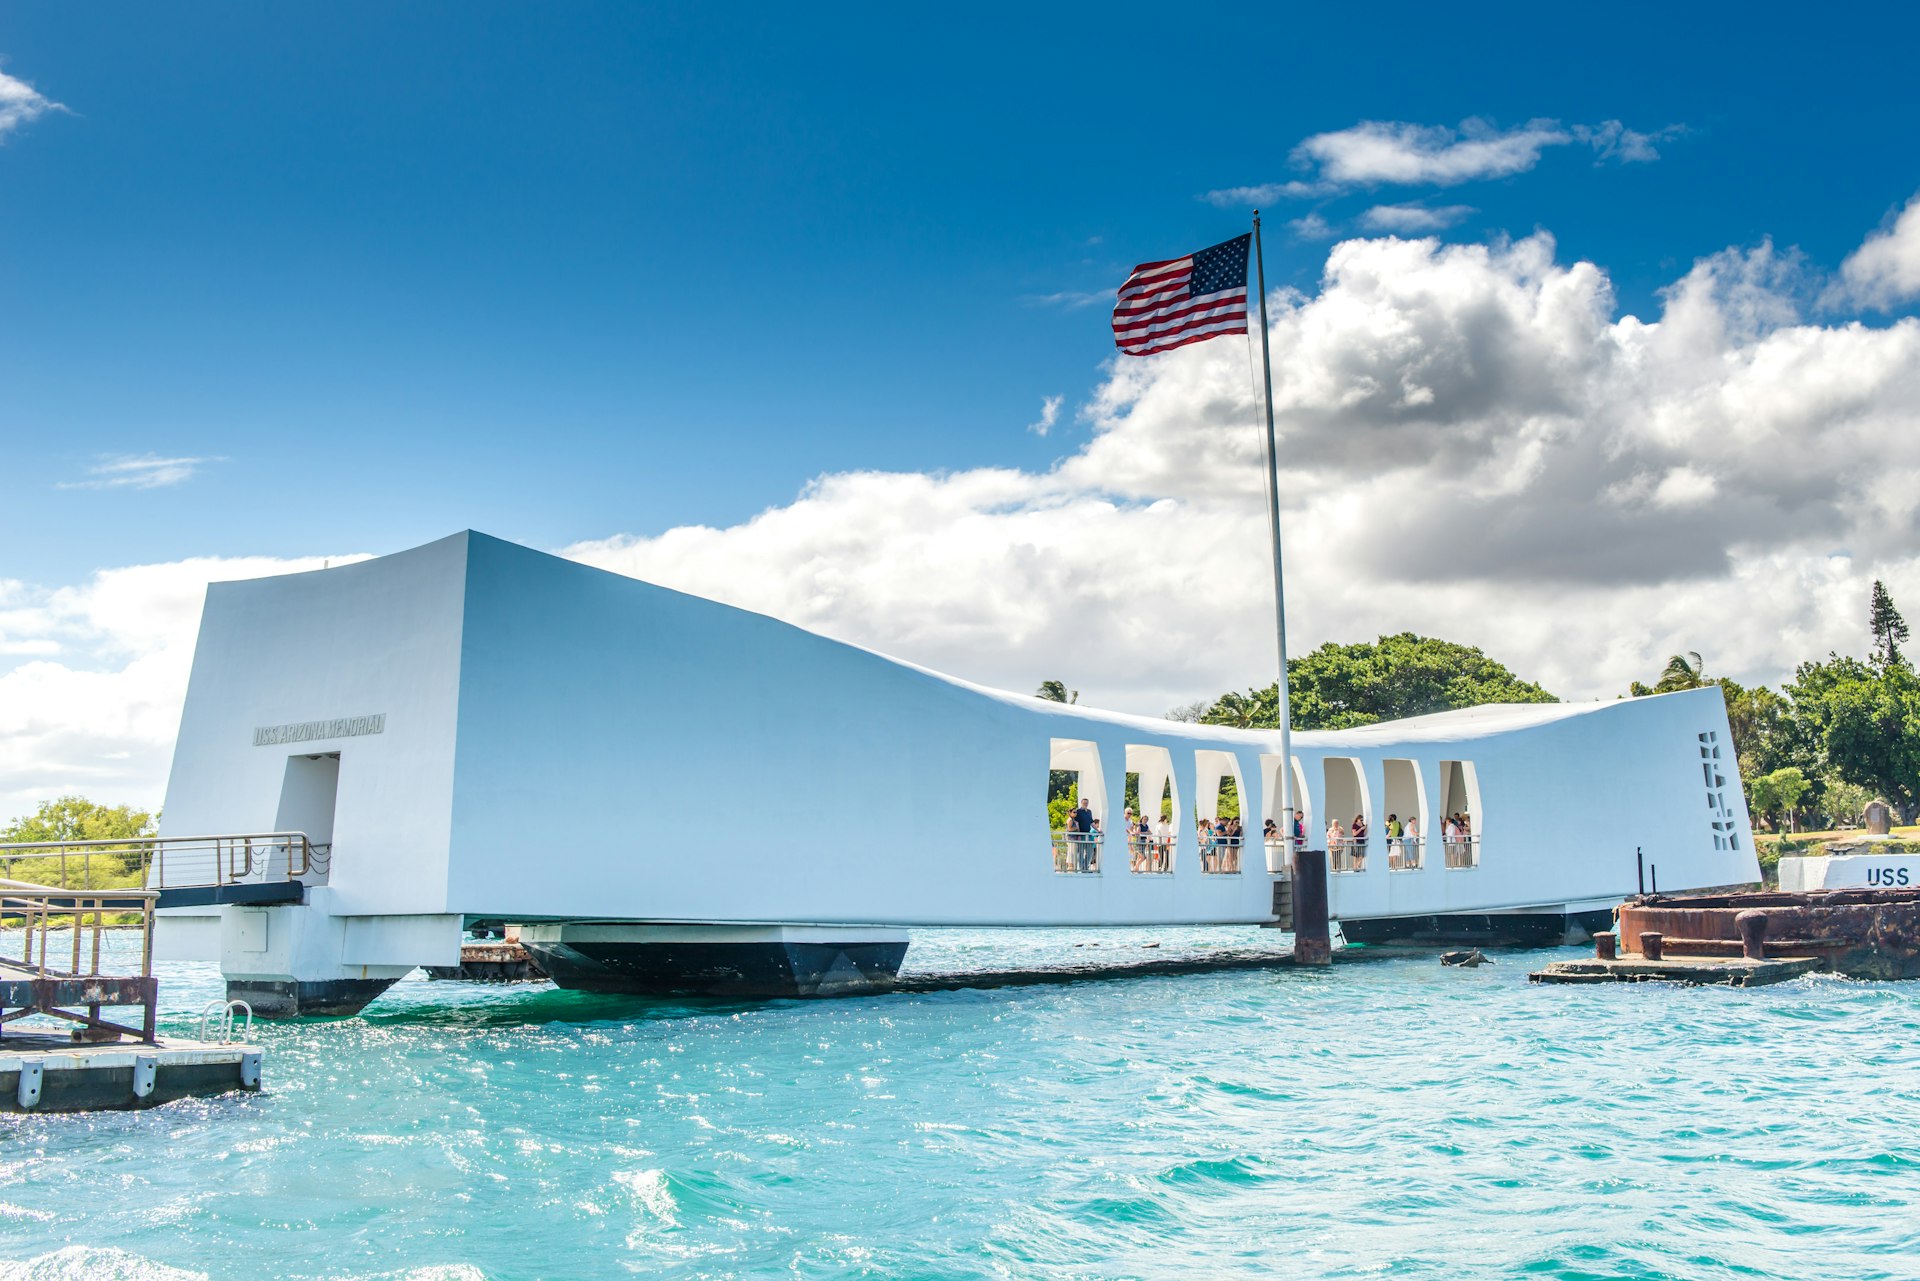 The USS Arizona Memorial in Pearl Harbor